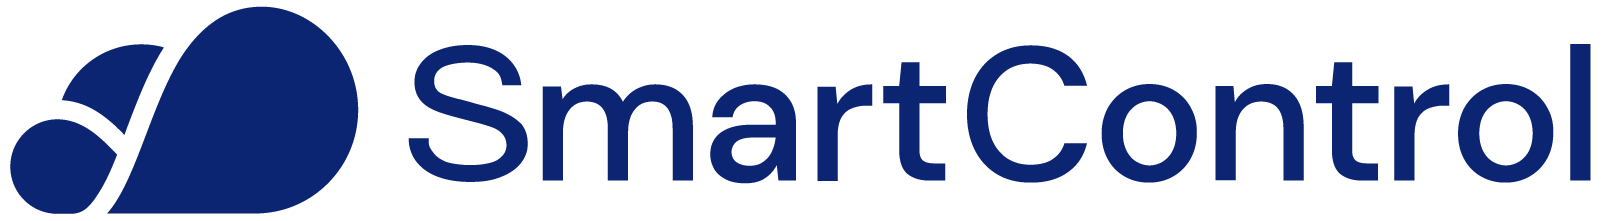 smartcontrol_logo_blu